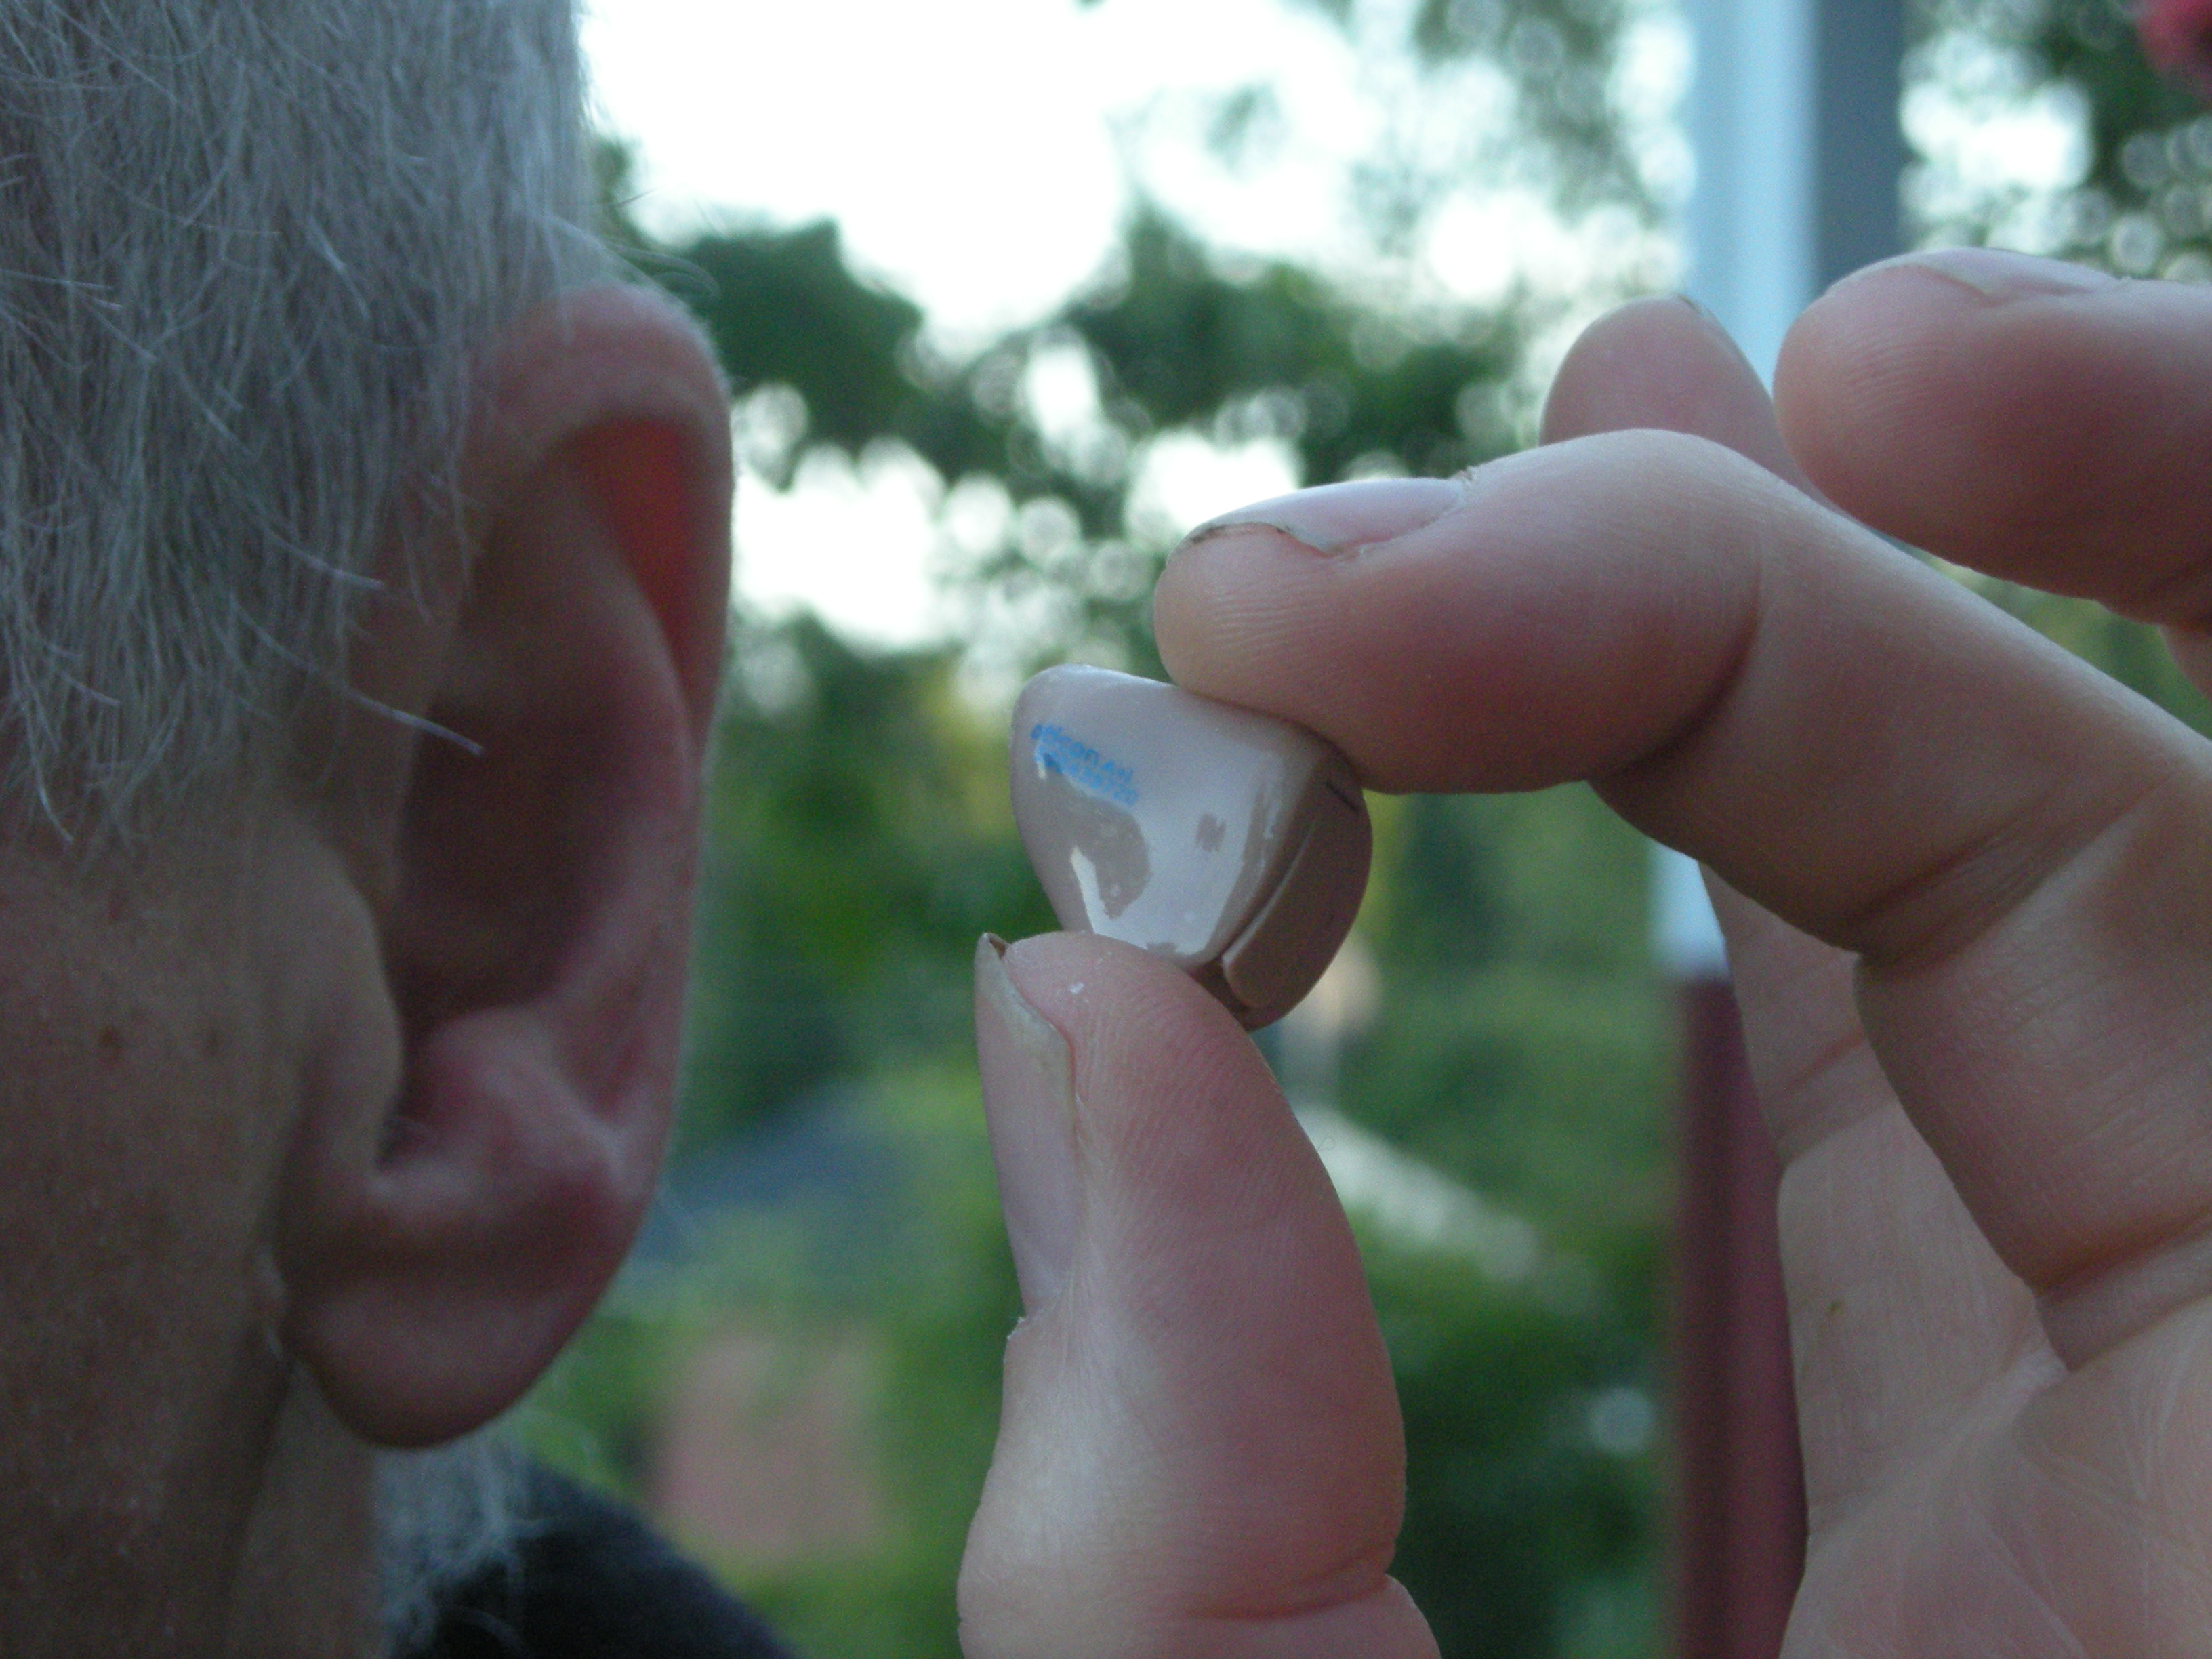 Início da perda auditiva: qual especialista eu devo consultar? 